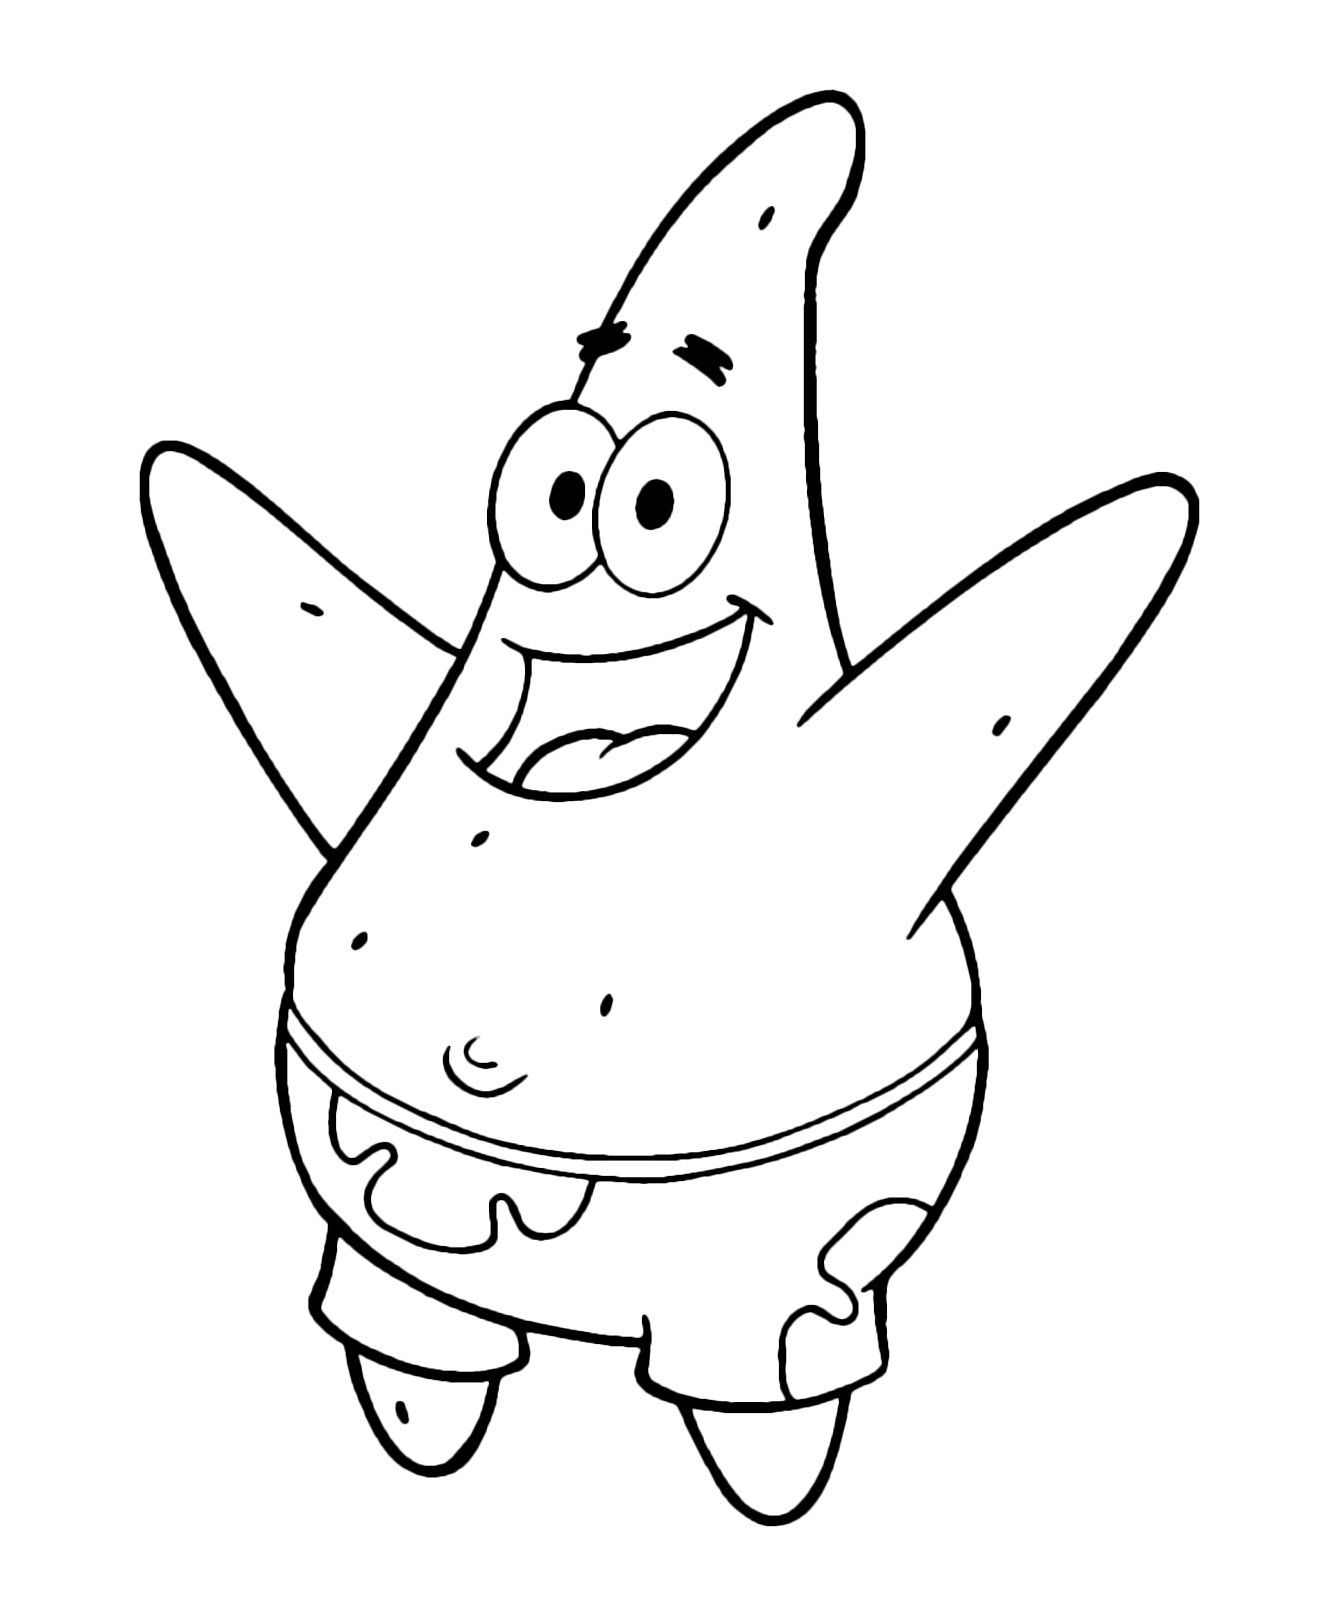 SpongeBob - Patrick Star with arms raised